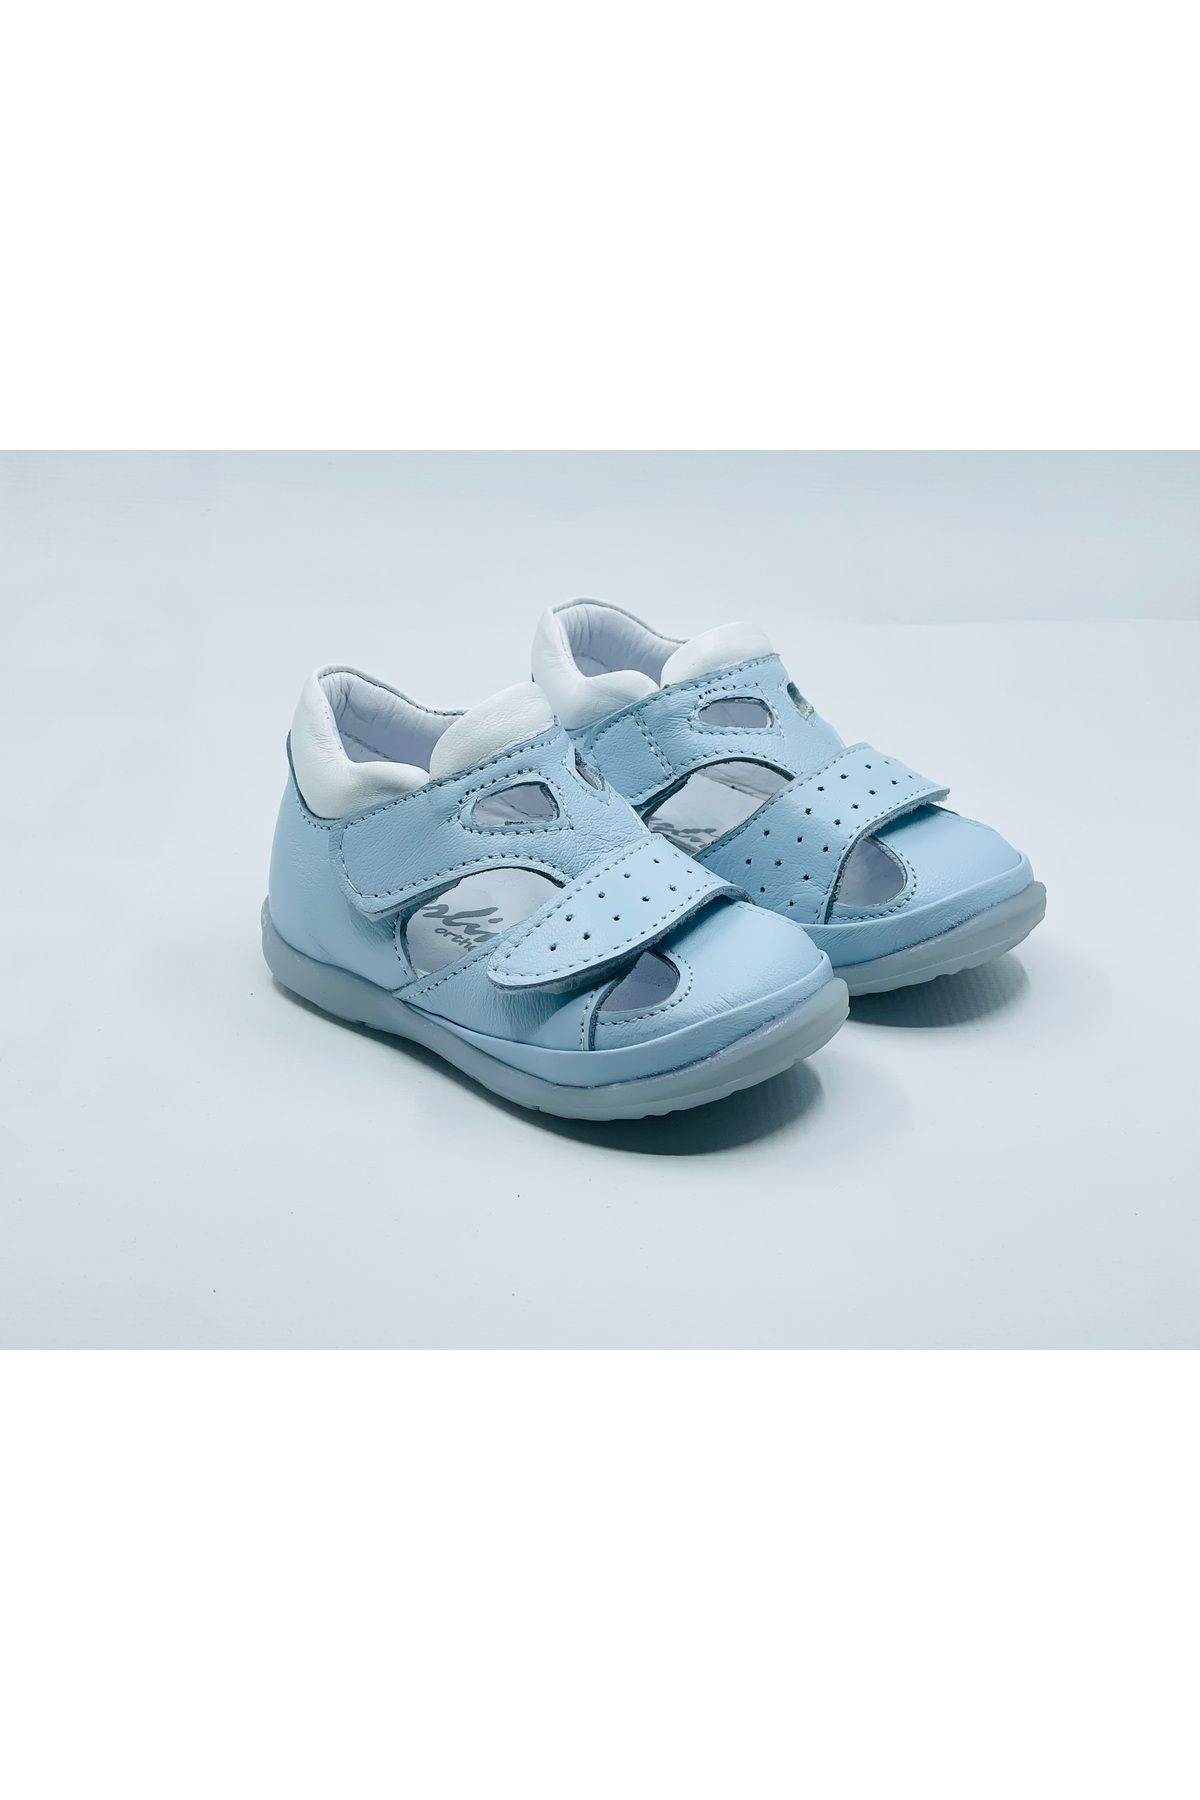 Perlina Deri Ortopedik Taban Bebek Ilk Adım Ayakkabı